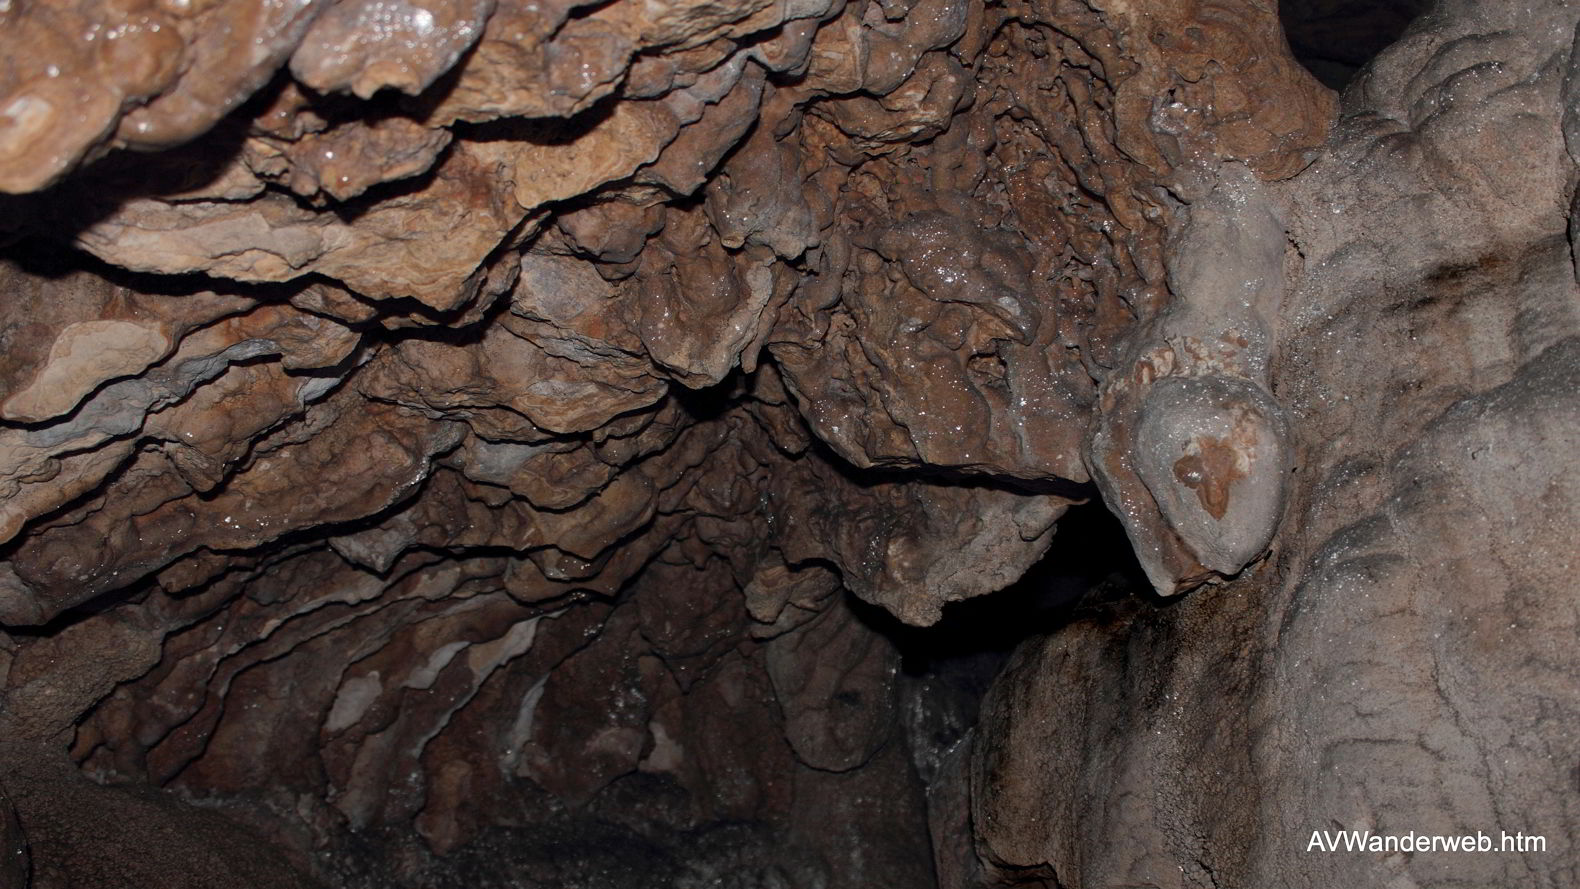 Schleierfälle Ammer Höhle Scheibum